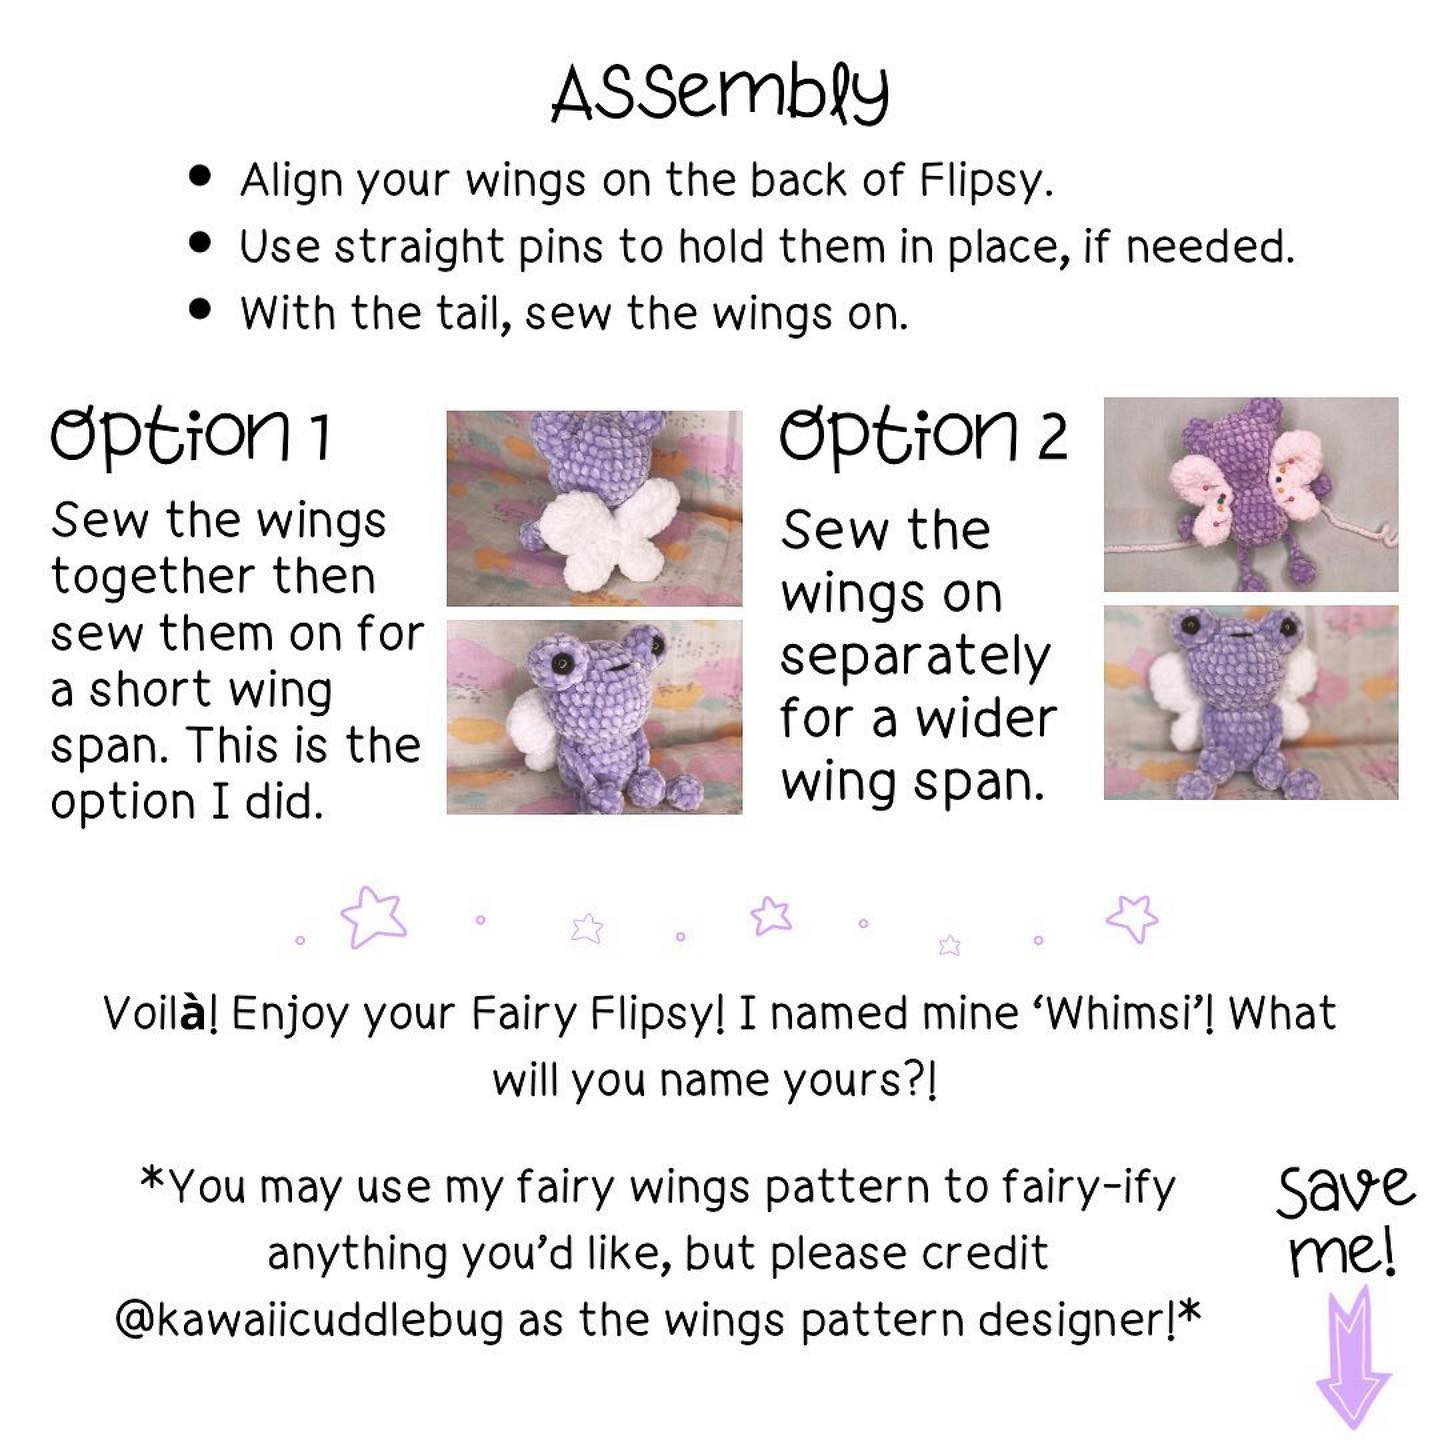 free crochet pattern fairy froggy wings